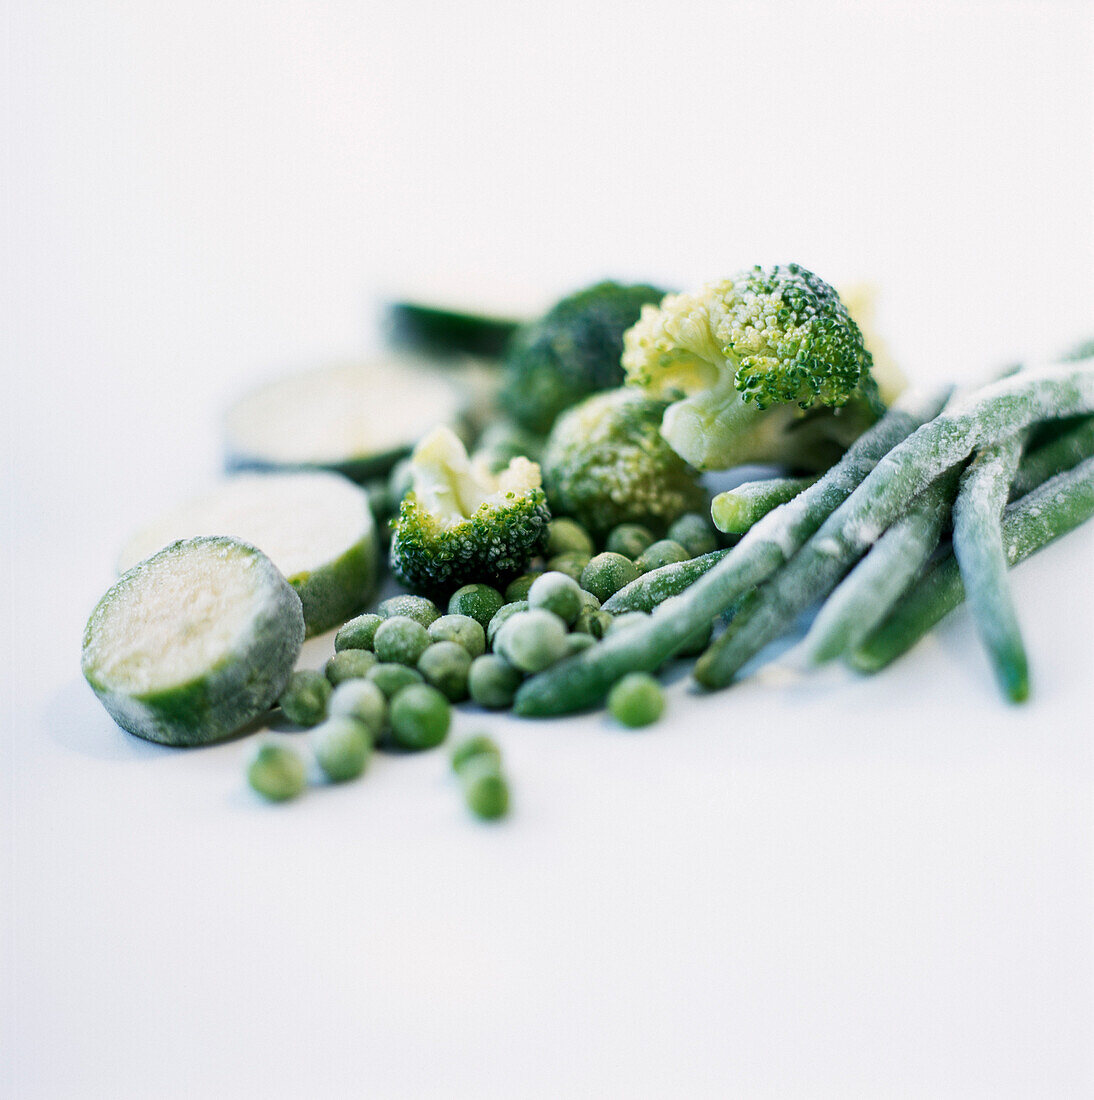 Frozen green vegetables